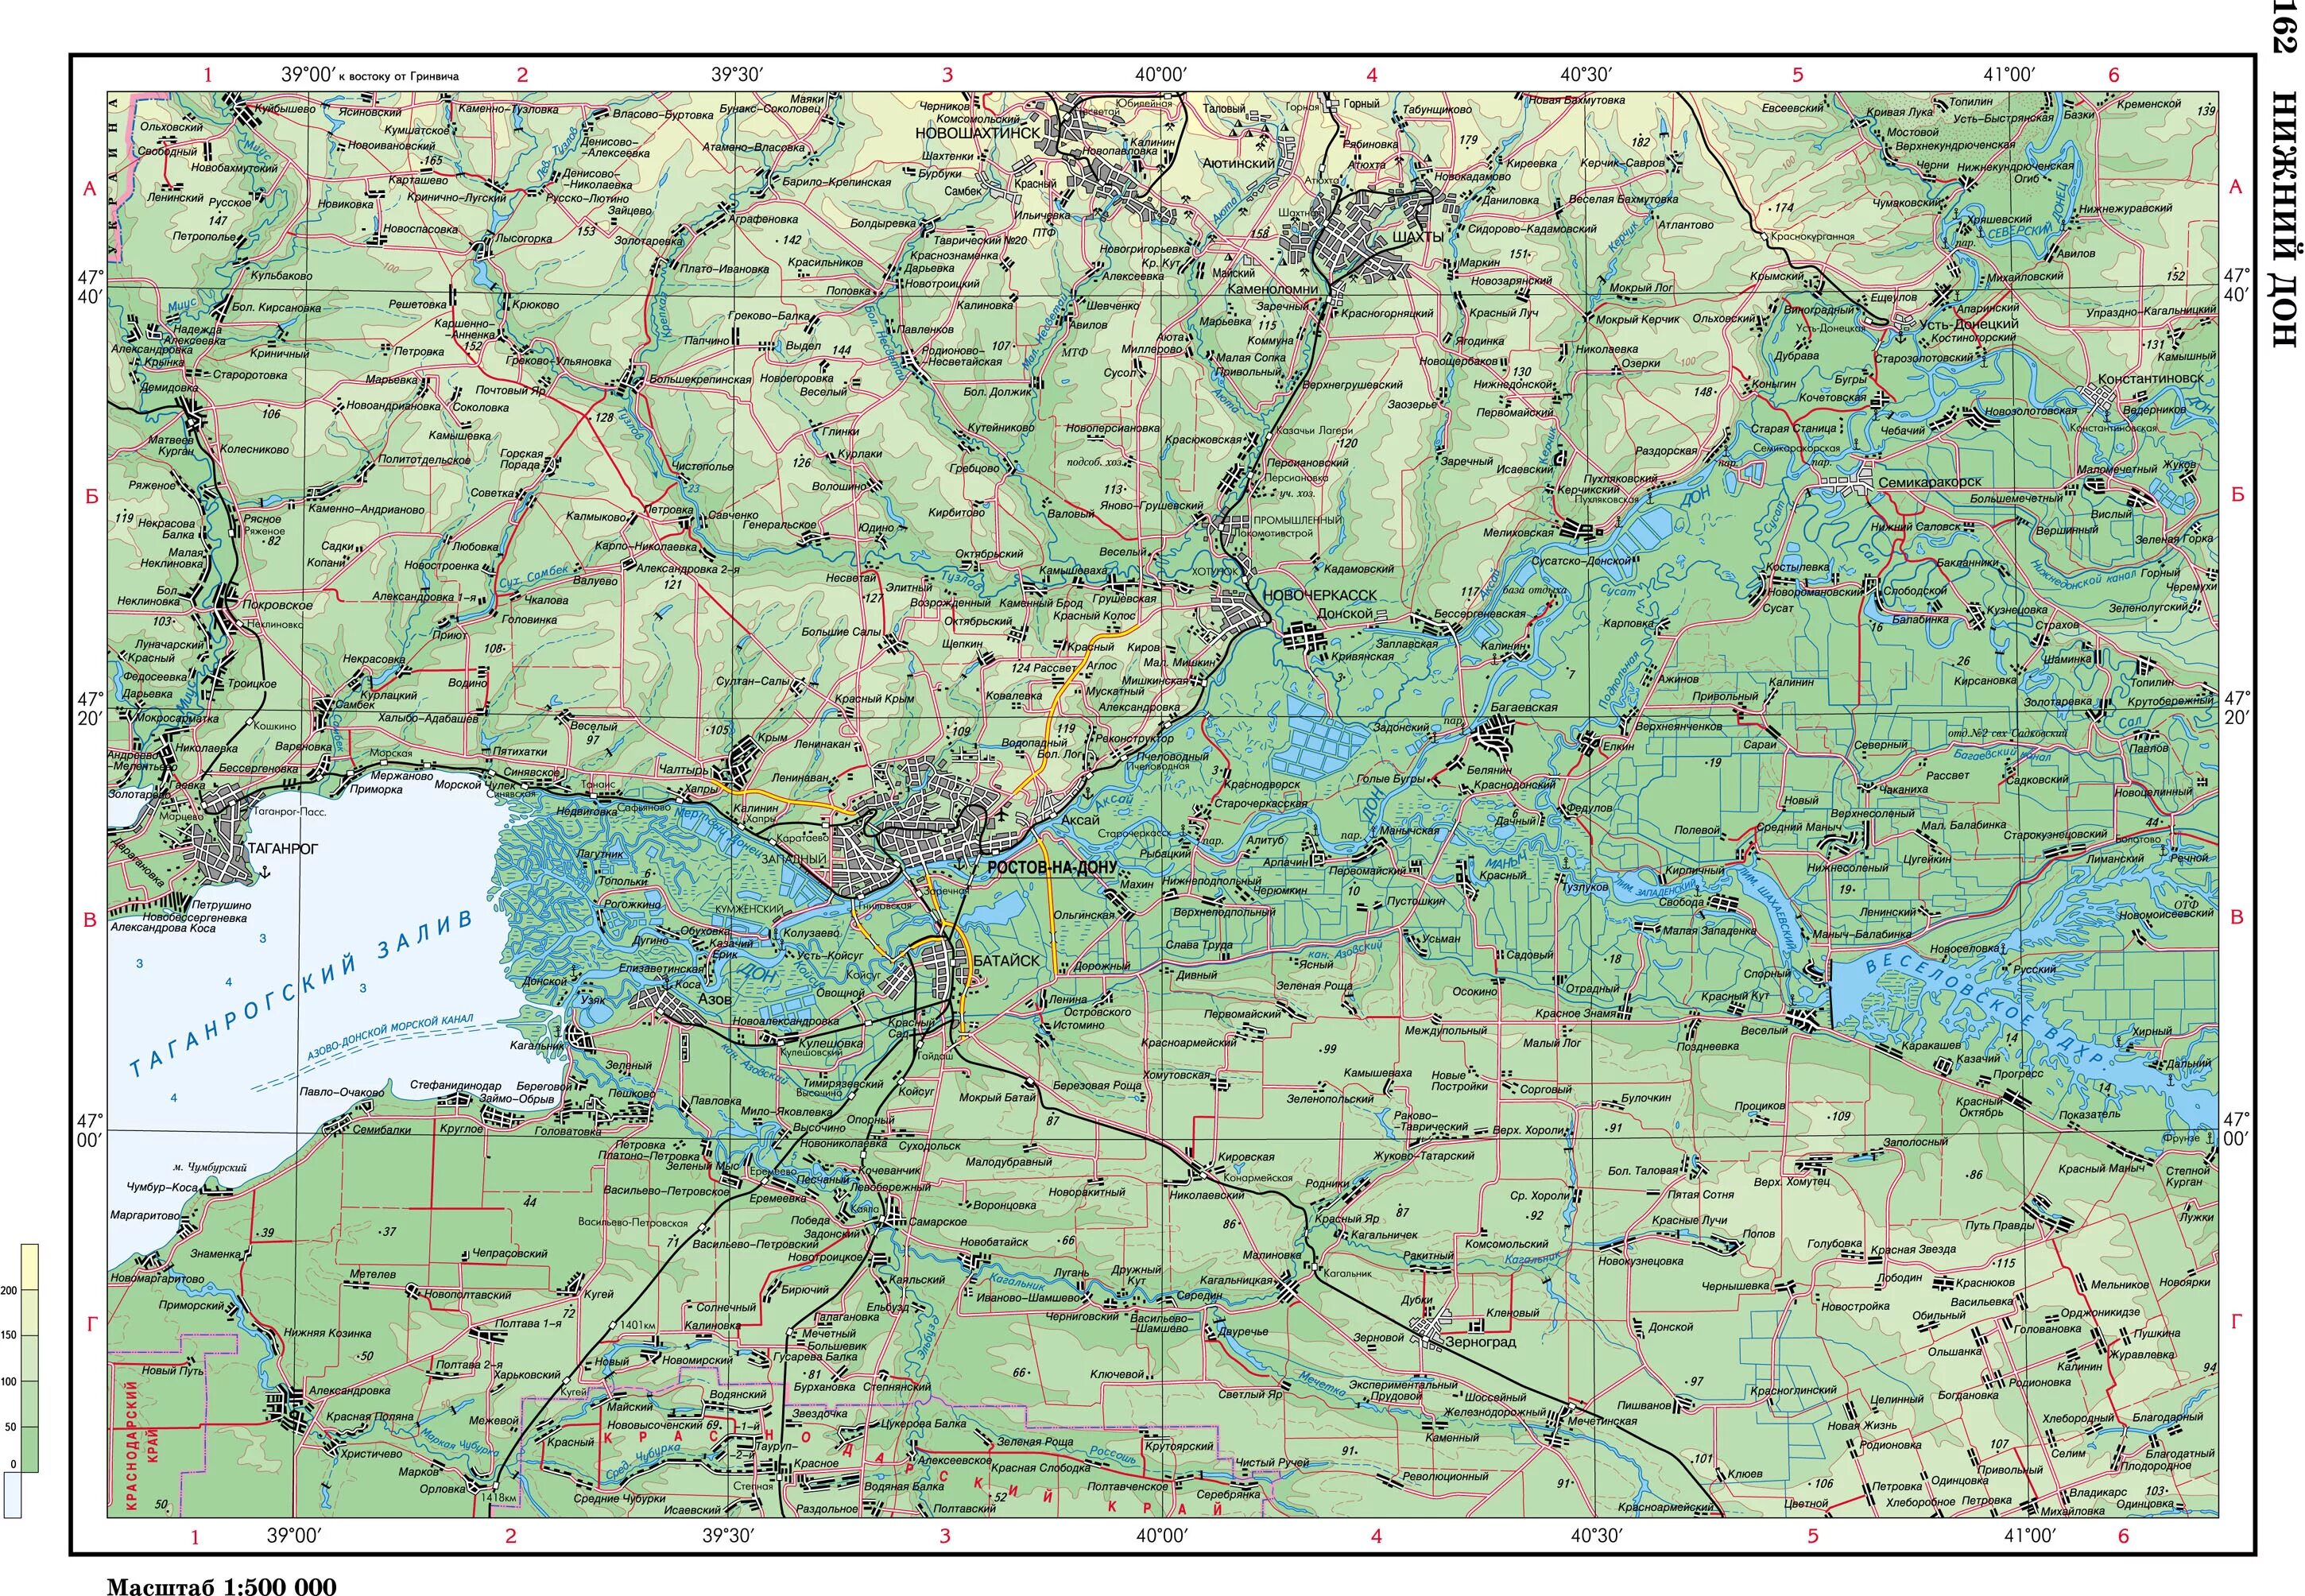 Нижний дон на карте. Река Дон на карте. Река Дон на карте России и Украины. Река Дон на карте Украины. Карта Нижнего Дона.